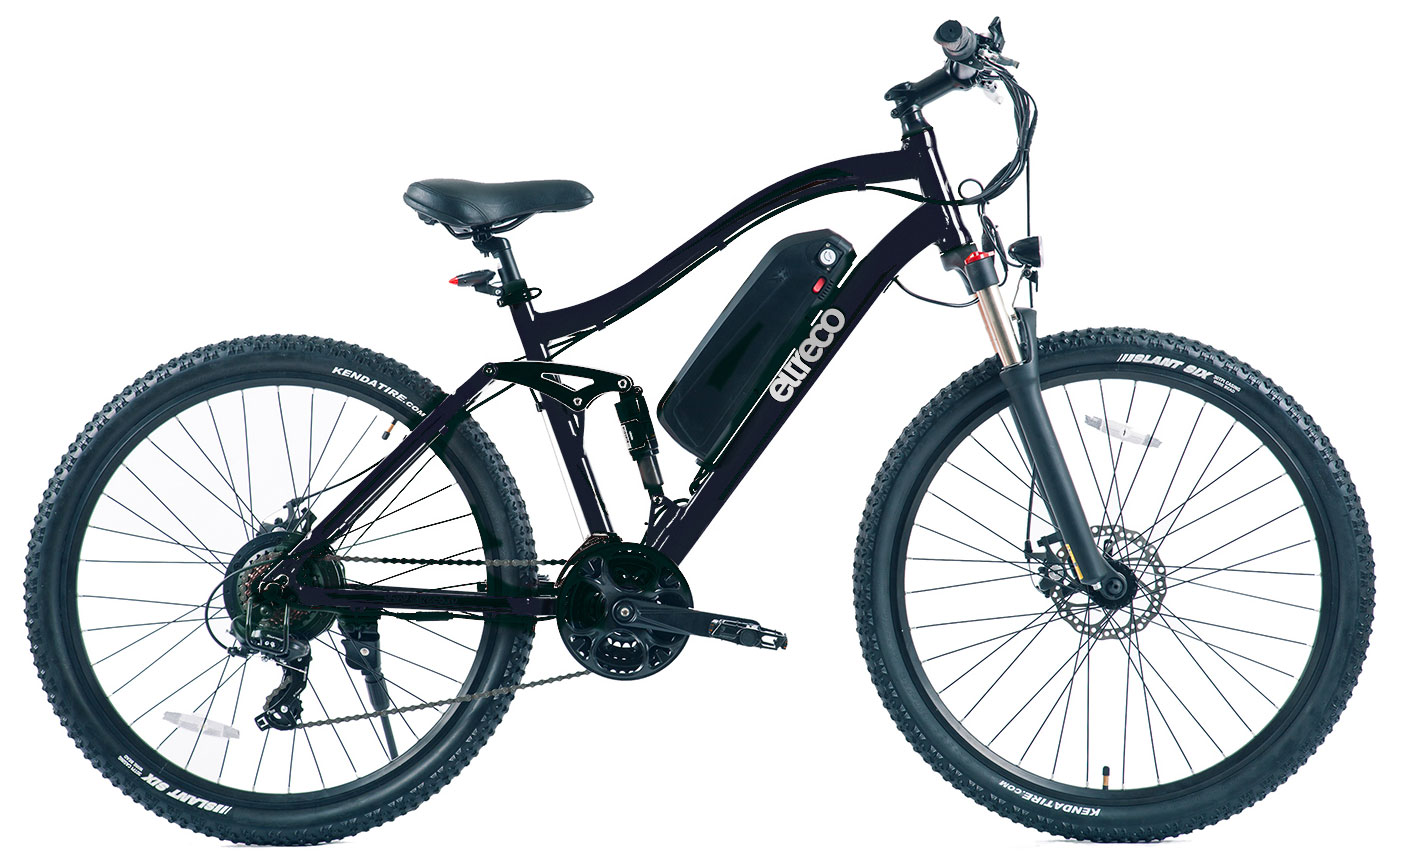  Отзывы о Электровелосипеде Eltreco FS-900 27,5 2018